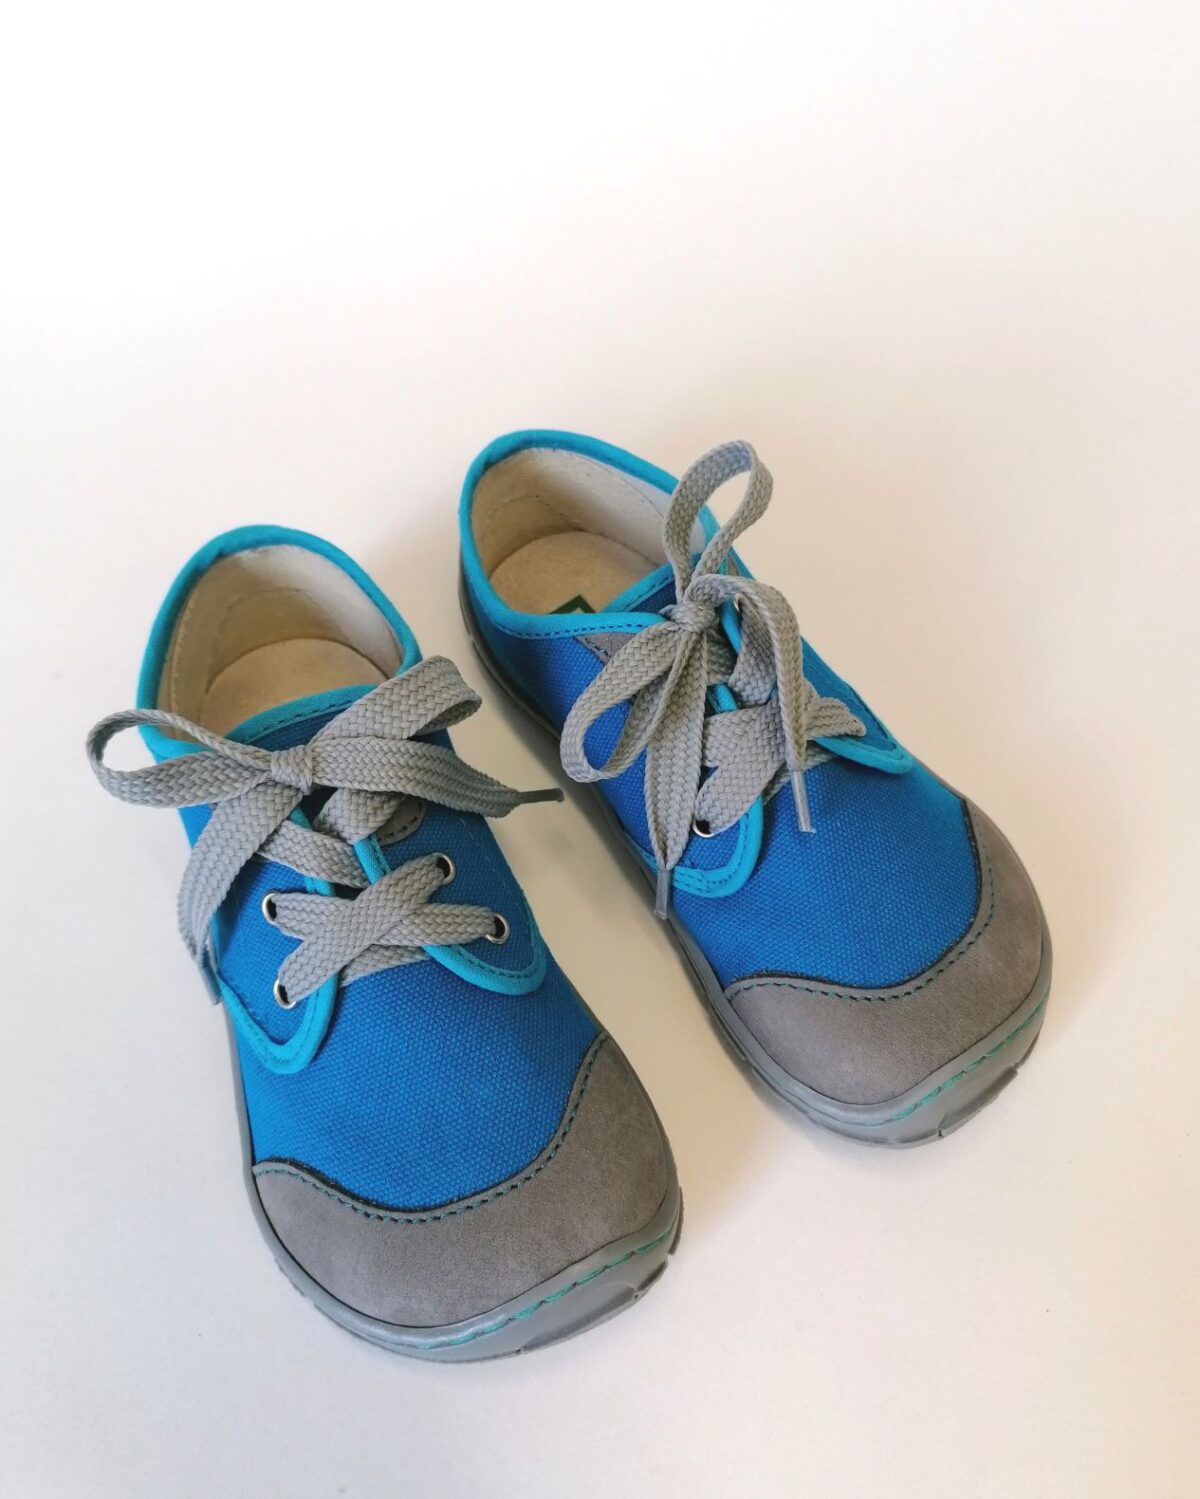 Fare Bare tennised, sinine, paeltega Laste barefoot jalatsid - HellyK - Kvaliteetsed lasteriided, villariided, barefoot jalatsid